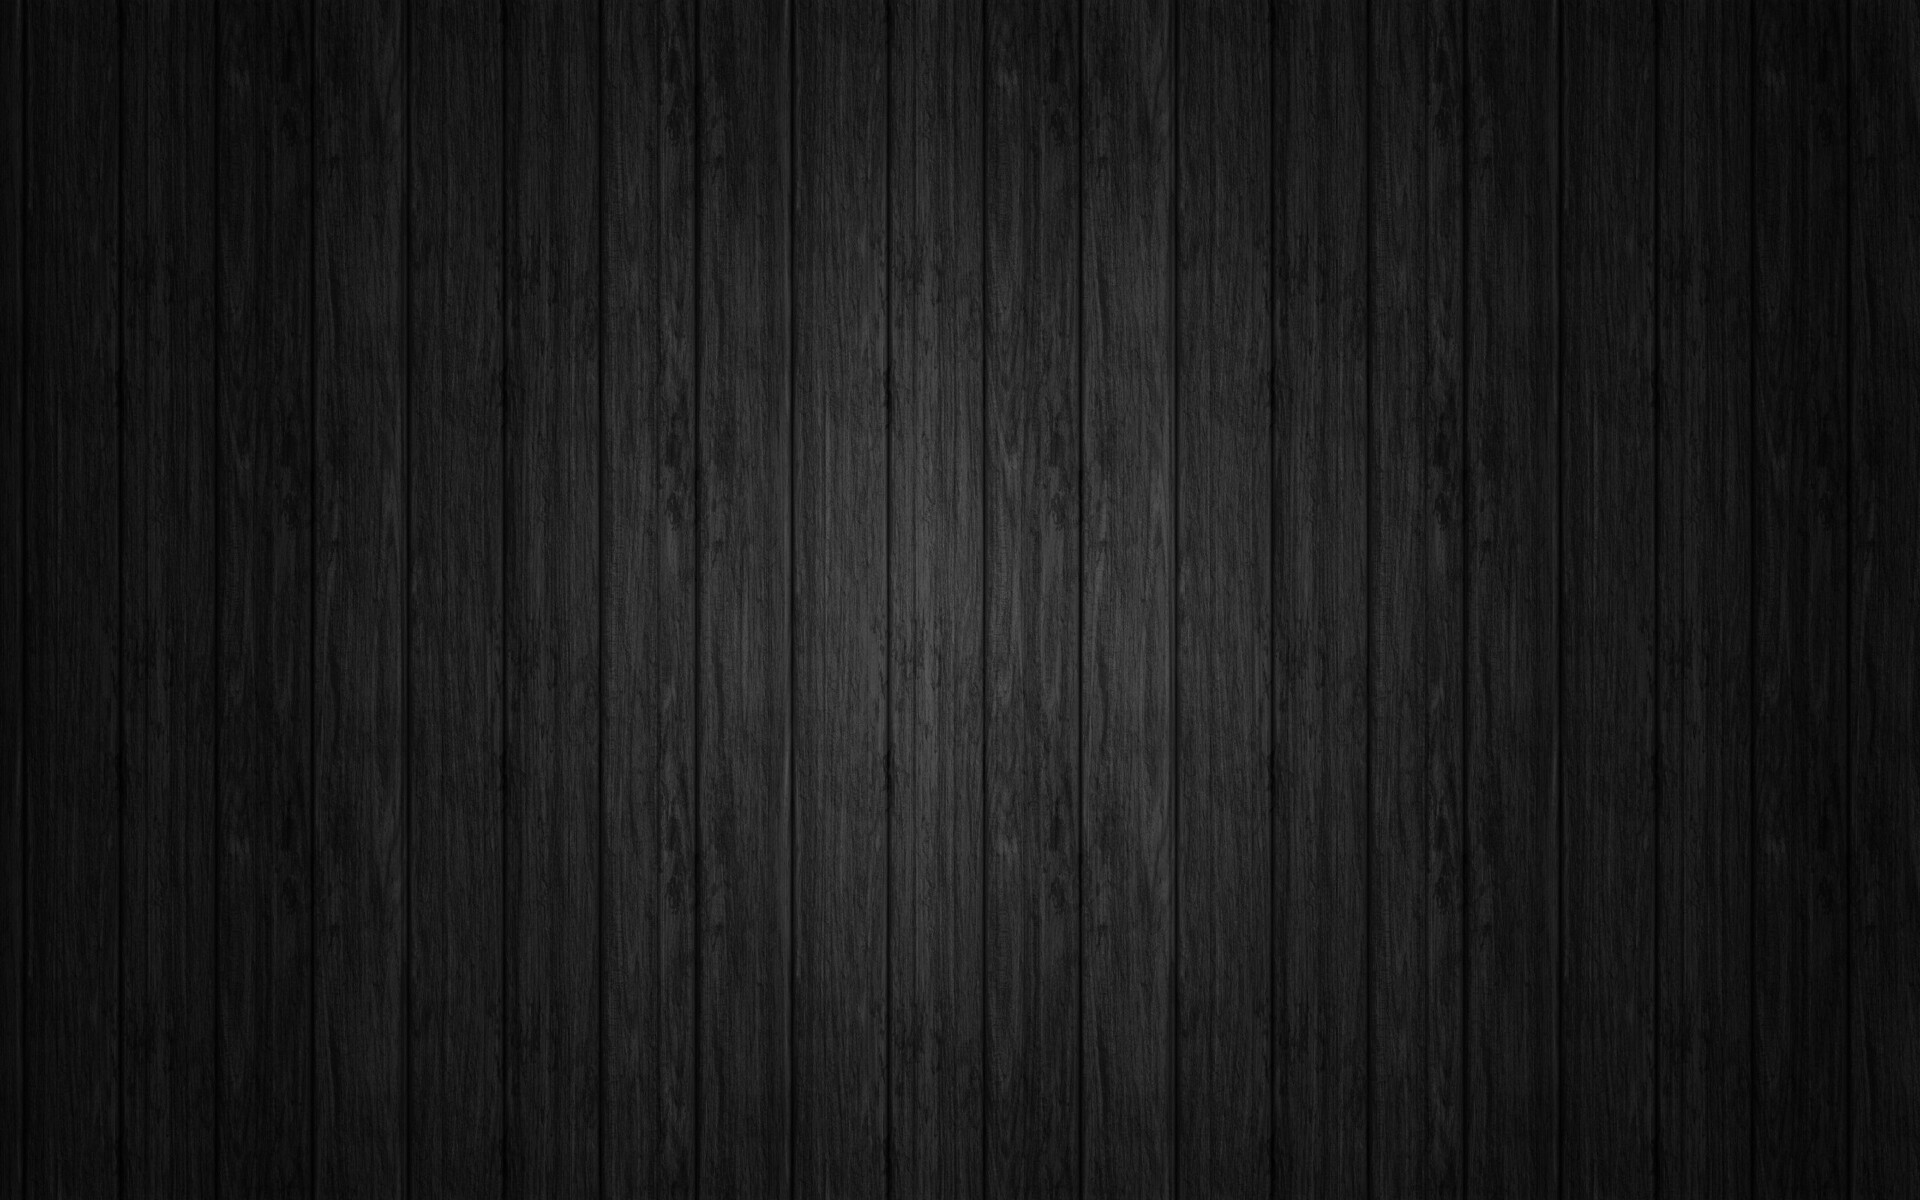 Hình nền gỗ đen đặc trưng sẽ mang lại một sự khác biệt và cá tính cho bạn. Với những đường vân gỗ đen đặc trưng, hình ảnh sẽ vô cùng ấn tượng và độc đáo.